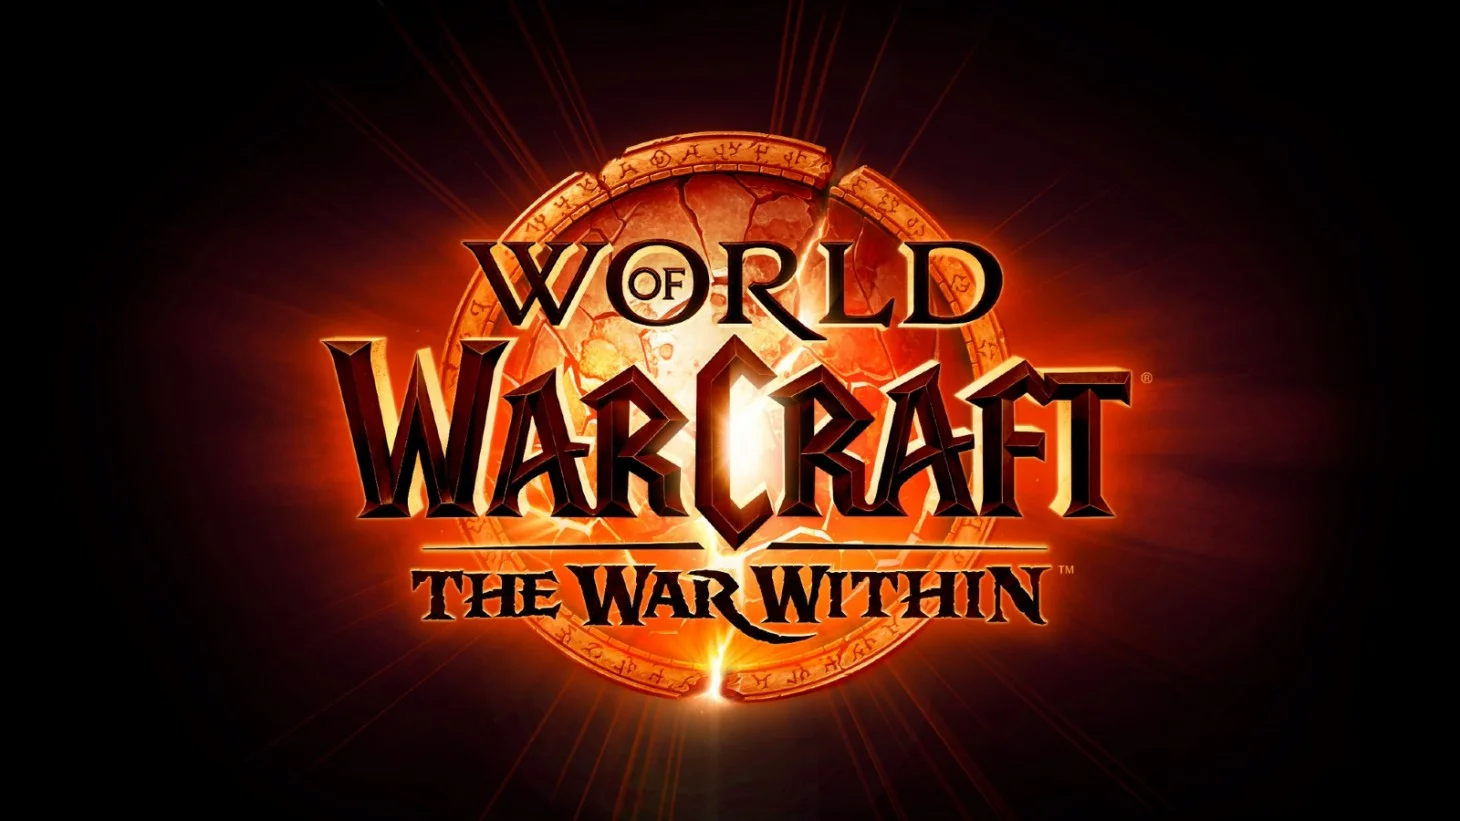 Blizzard опублікувала новий трейлер World of Warcraft: The War Within , у якому повідомила дату релізу DLC - 26 серпня